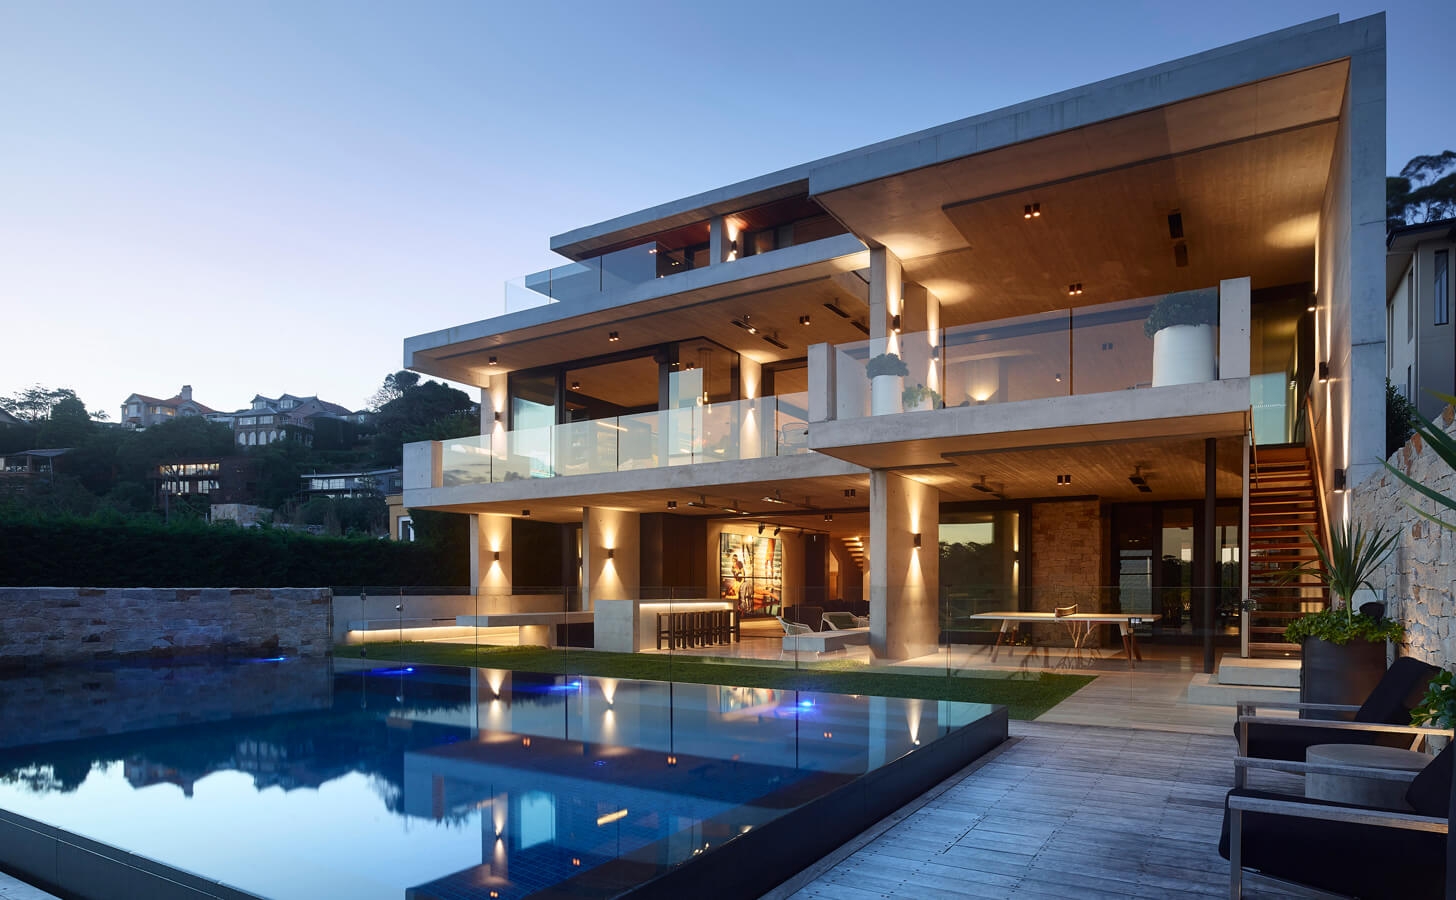 A Mosman házat a brazil modernista építészeti irányzat ihlette, melynek fő ismérve, hogy a legfontosabb építőanyag a beton